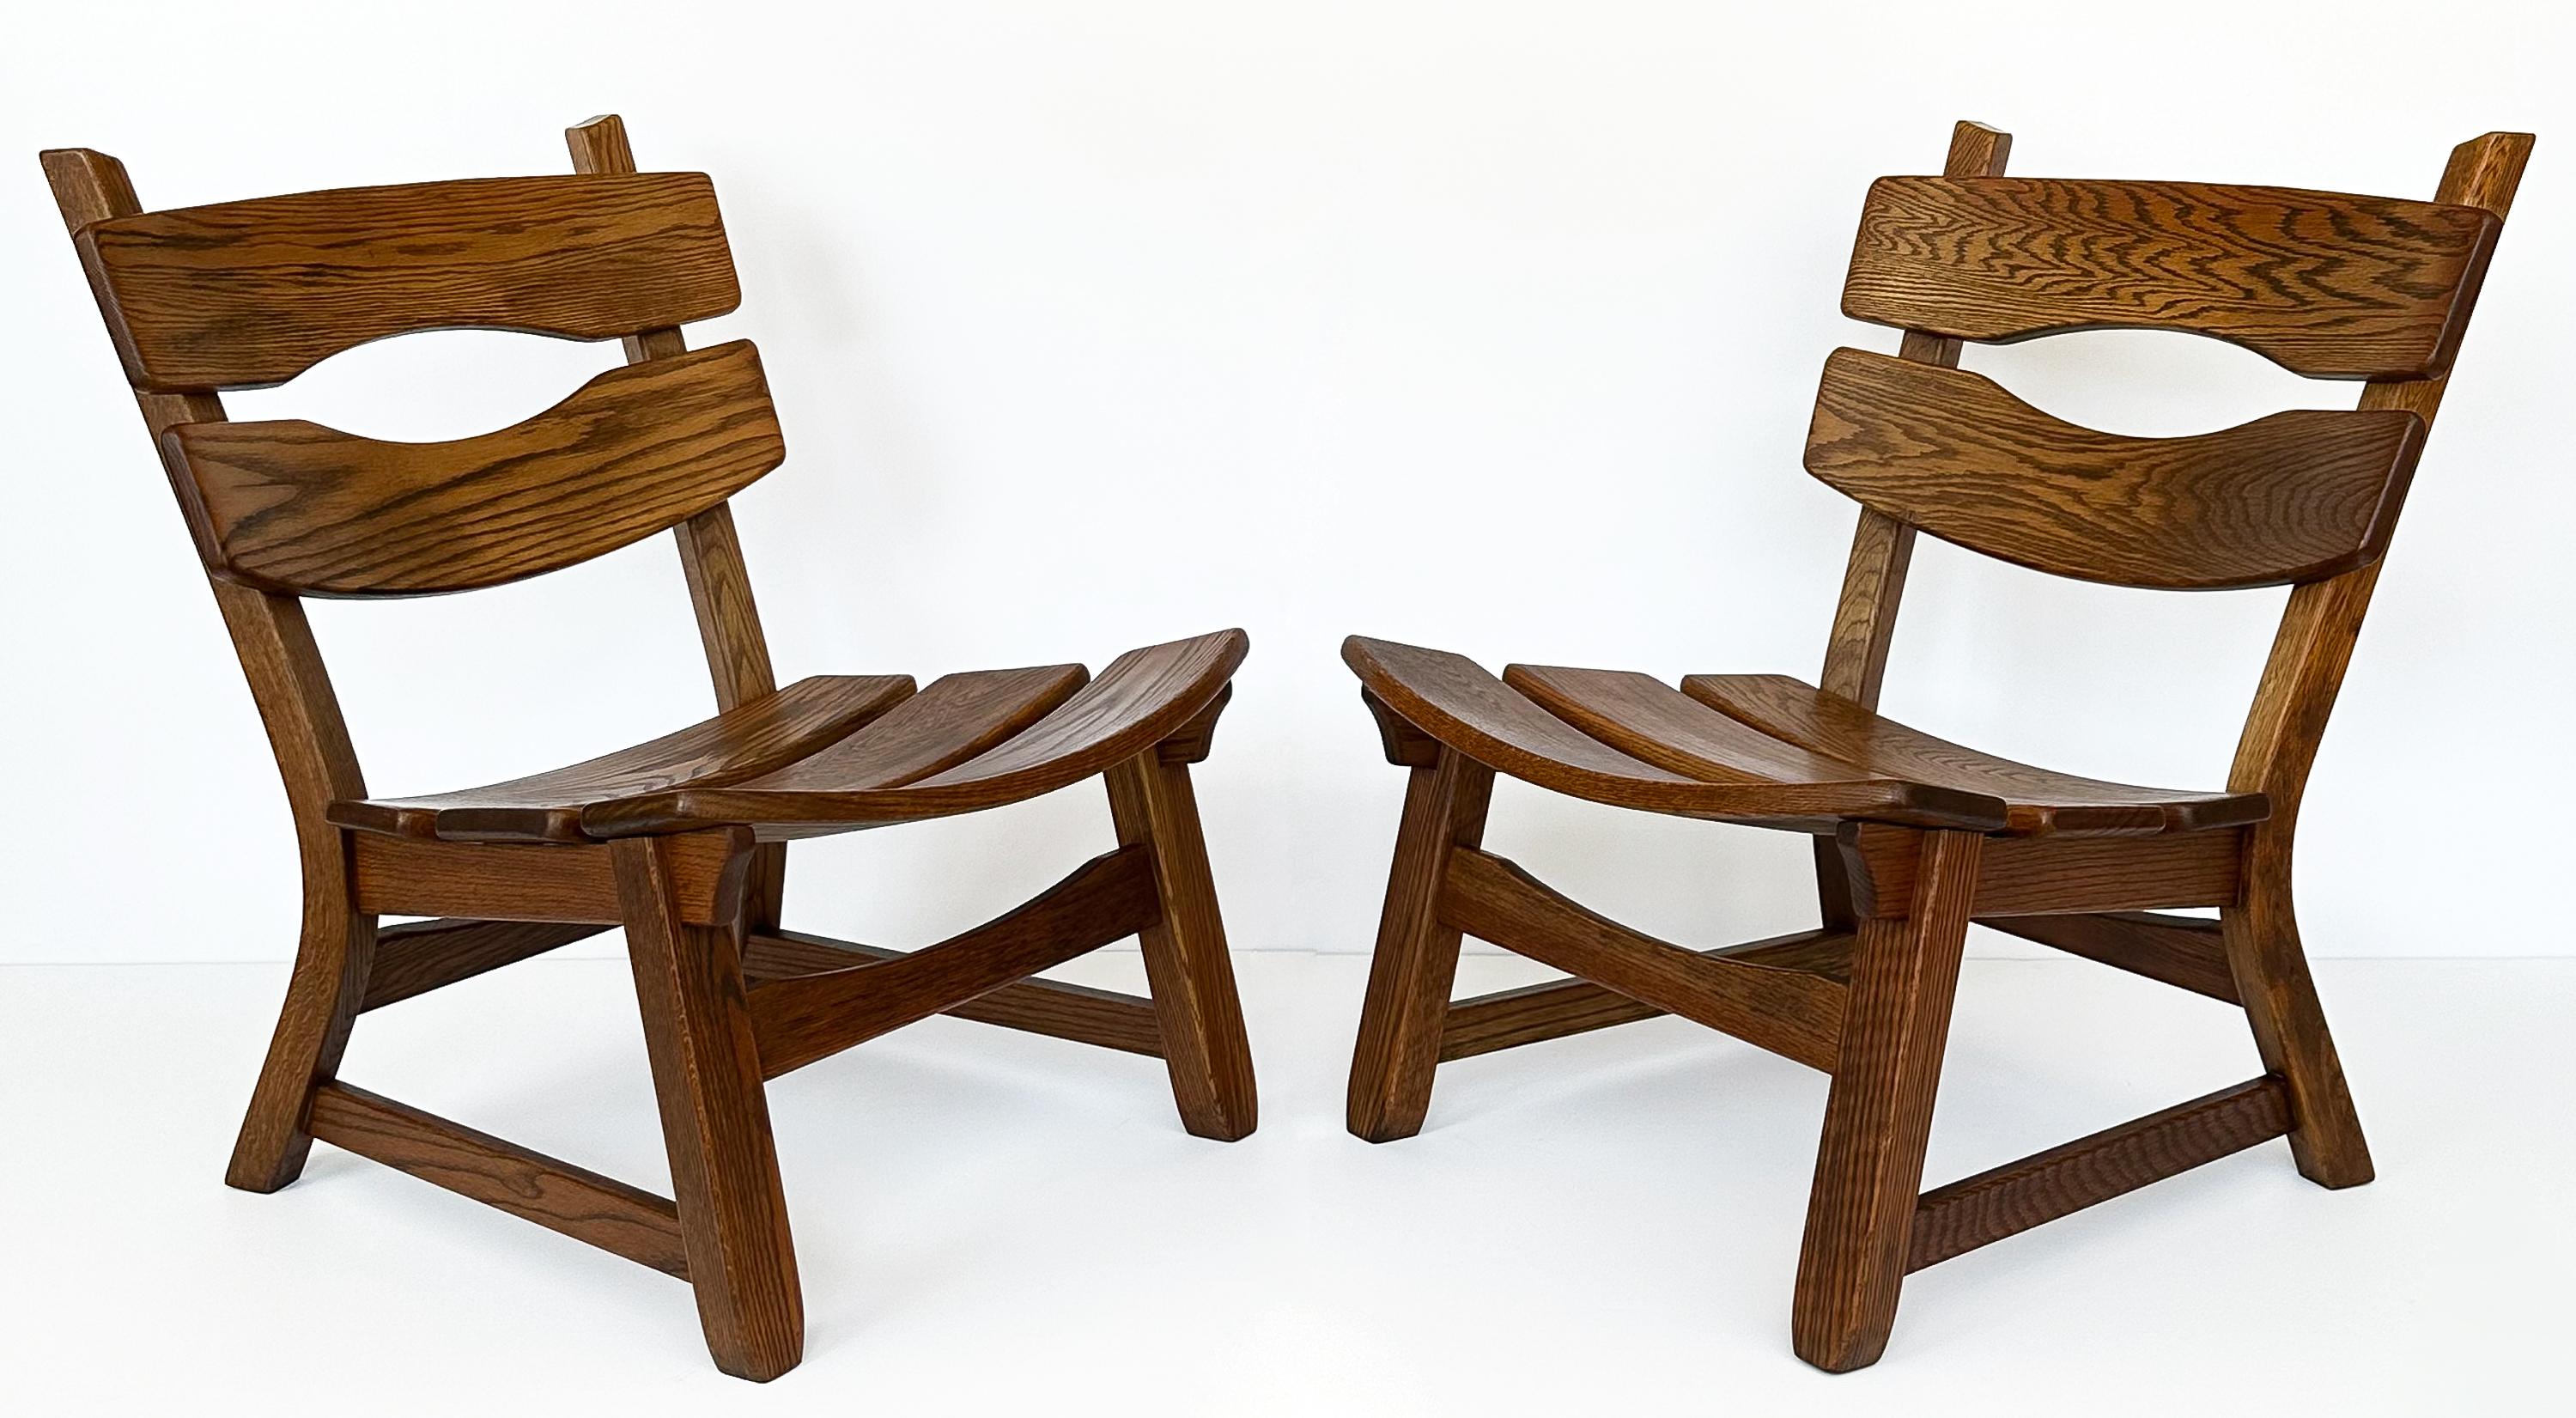 Ces chaises de salon rustiques et modernistes en chêne massif de Dittmann & Co pour AWA Radboud, fabriquées aux Pays-Bas dans les années 1970, témoignent d'un design robuste et d'un savoir-faire durable. Les chaises, dépourvues d'accoudoirs,